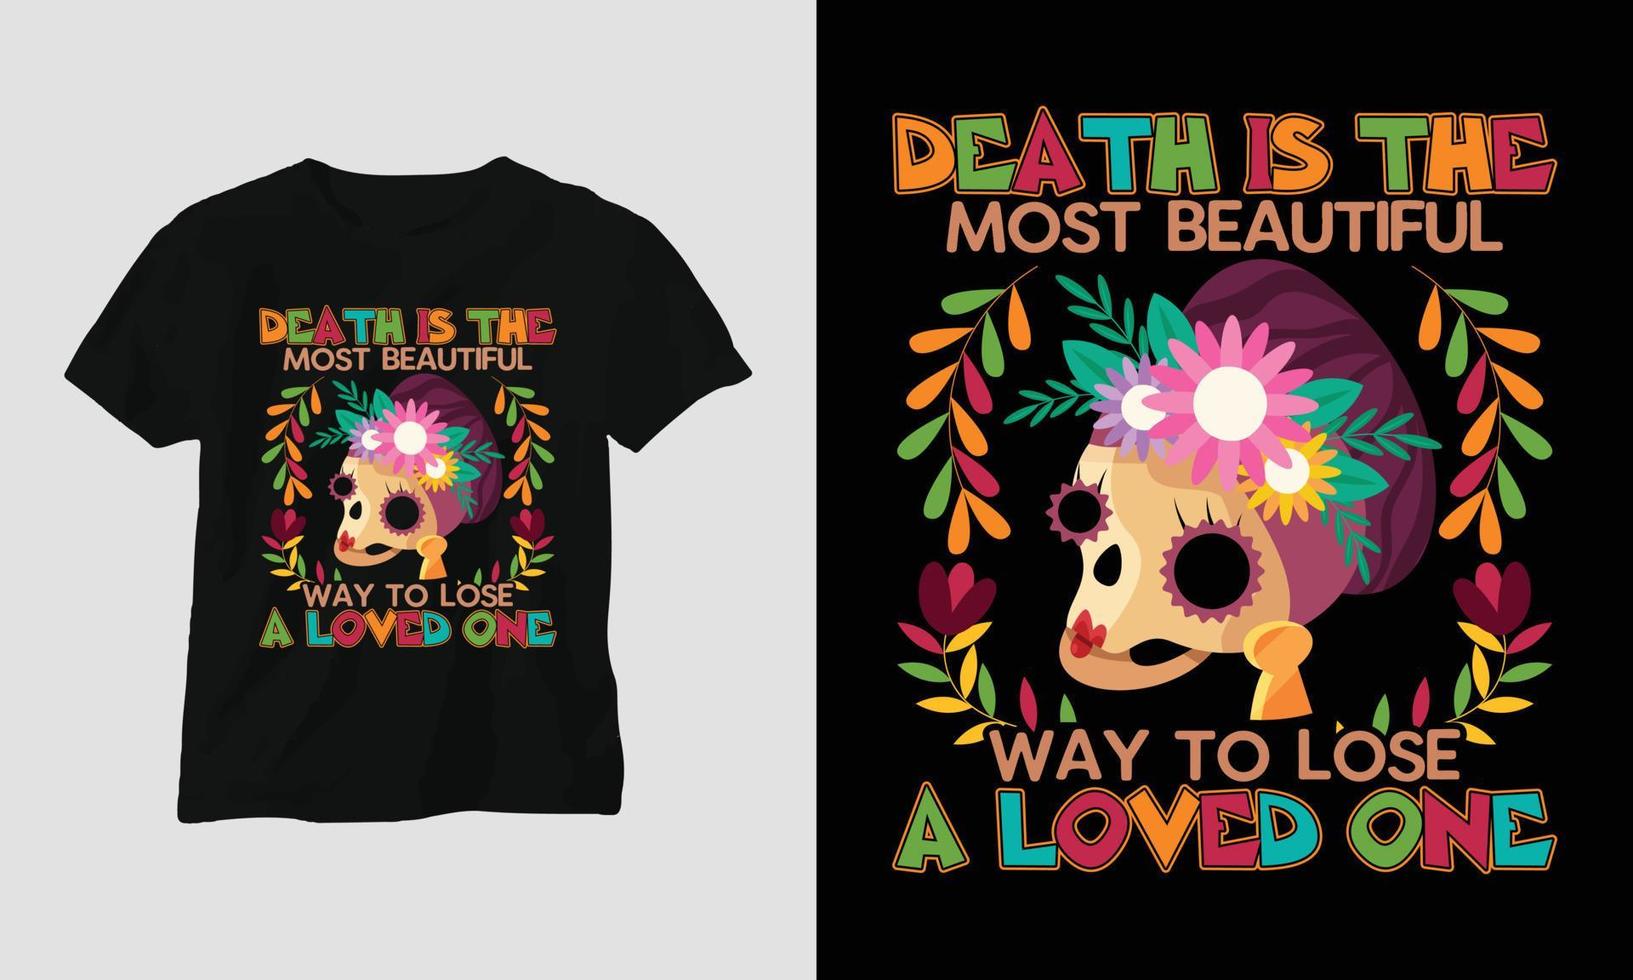 död är de mest skön sätt till tappa bort en älskade ett - dia de los muertos t-shirt design vektor